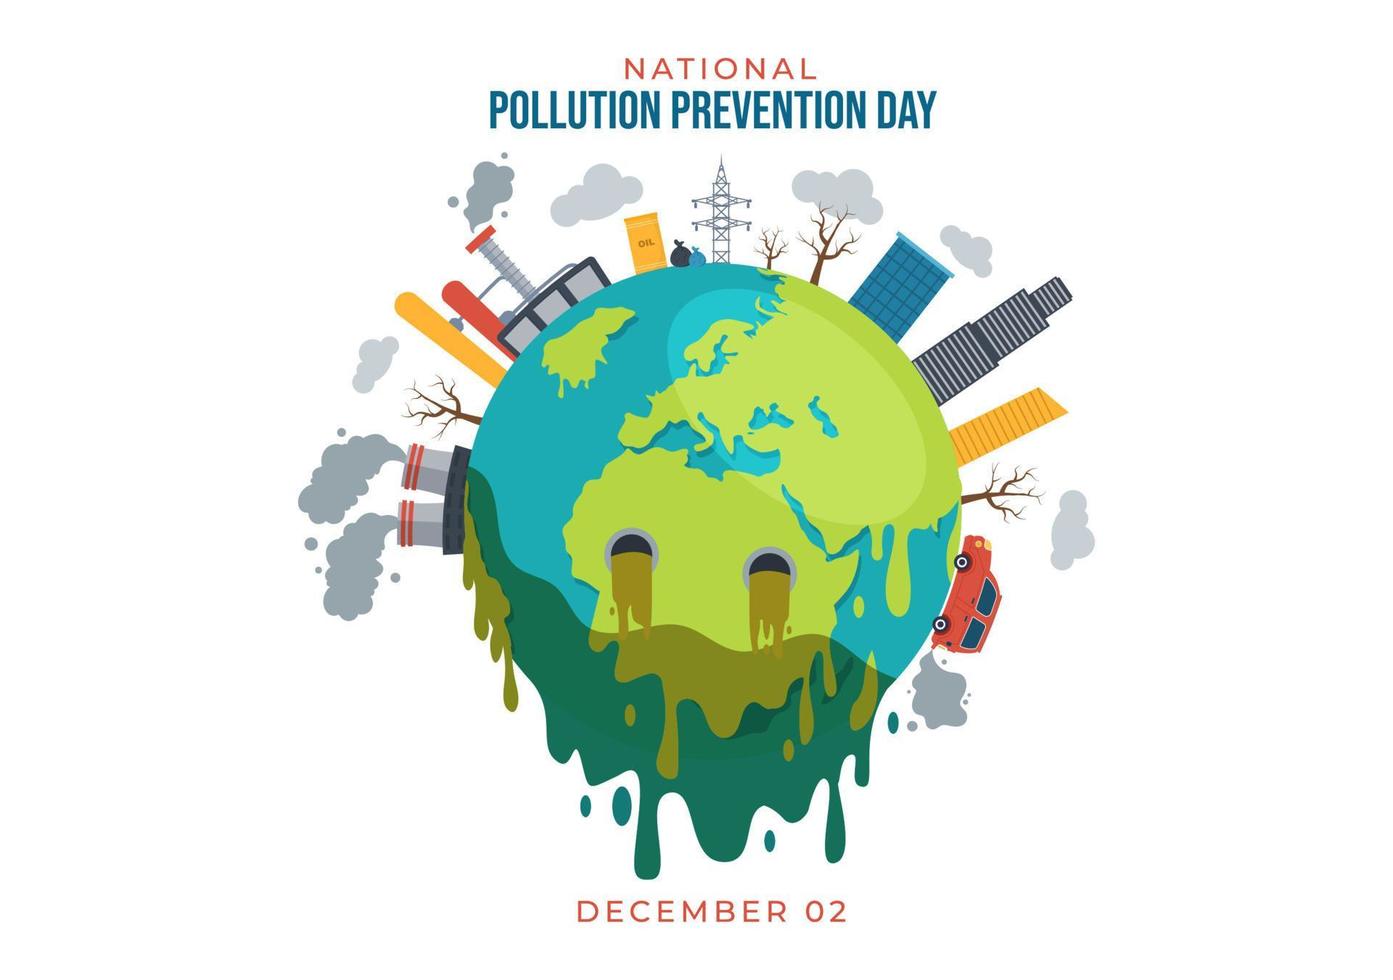 dia nacional de prevenção da poluição para campanha de conscientização sobre problemas de fábrica, floresta ou veículo em modelo de ilustração plana de desenho animado desenhado à mão vetor